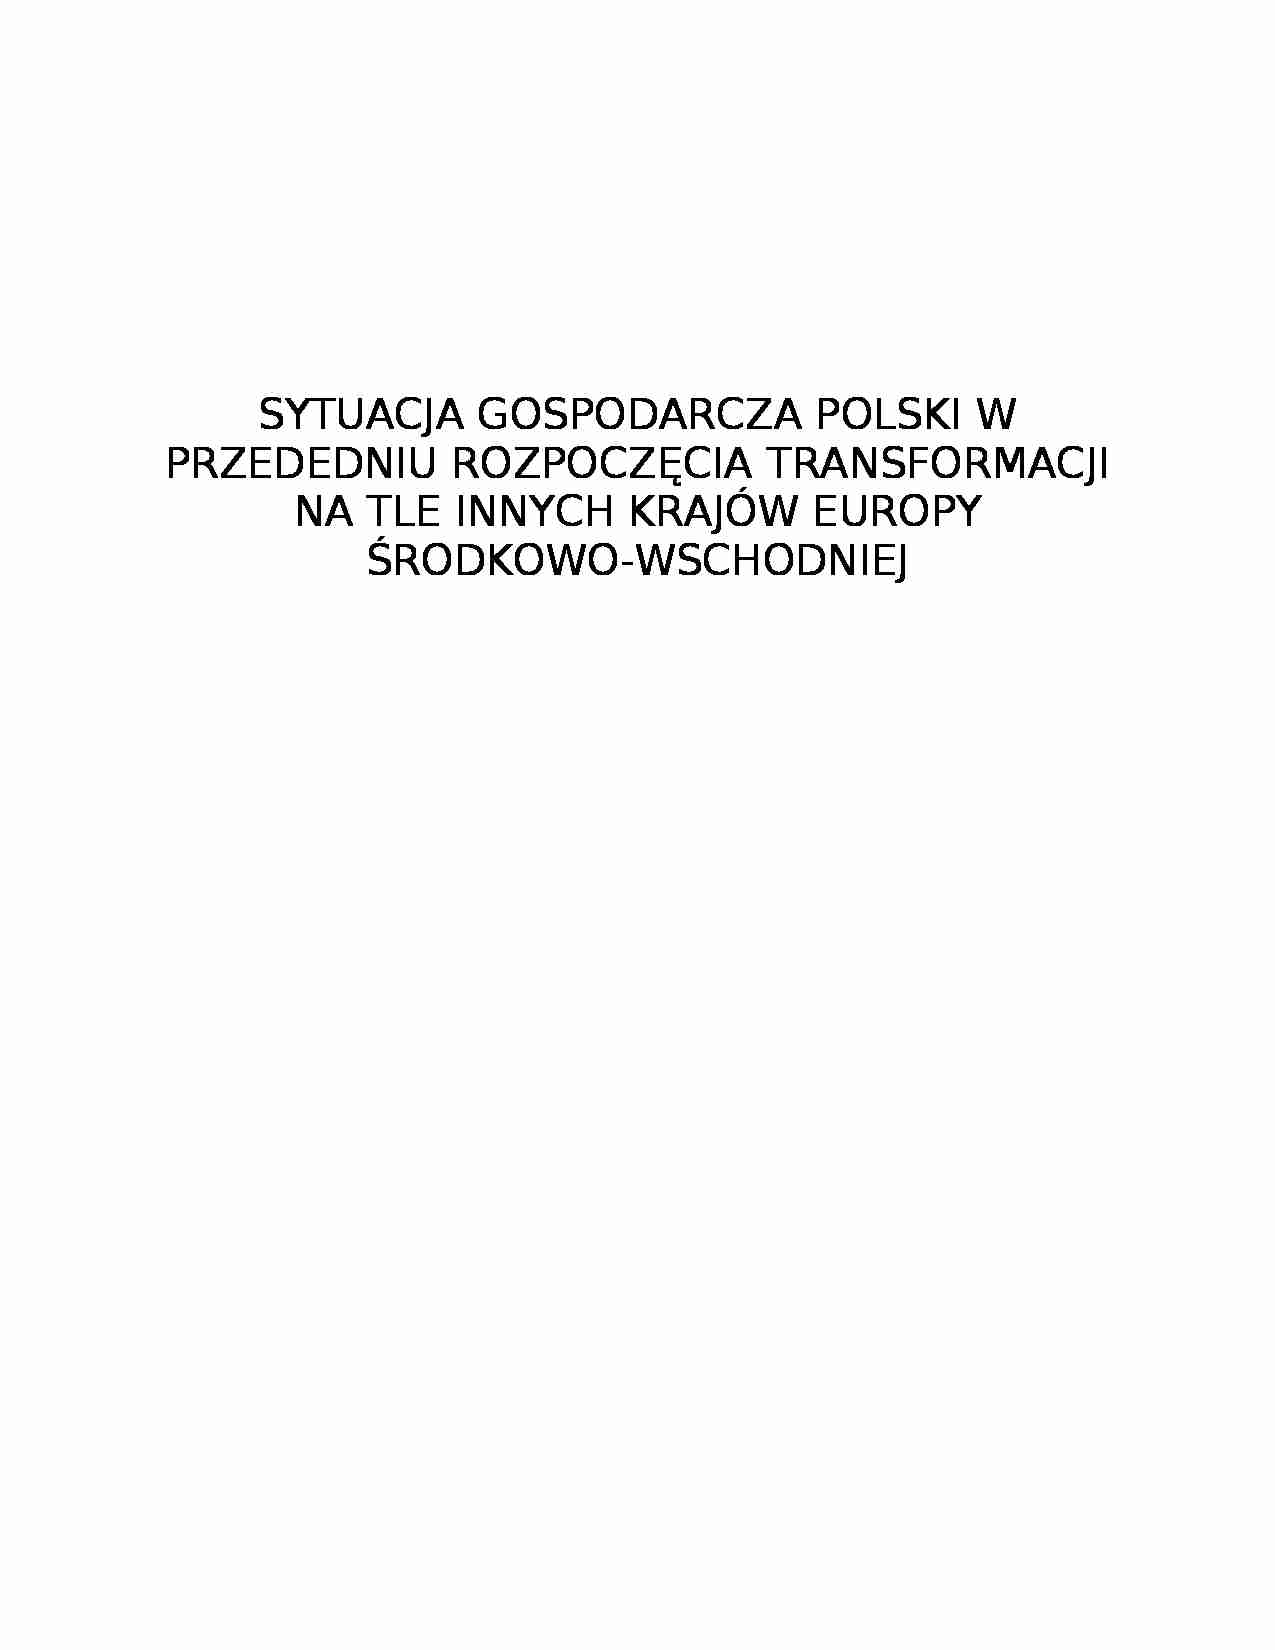 Sytuacja gospodarcza Polski przed transformacj_- praca semestralna - strona 1